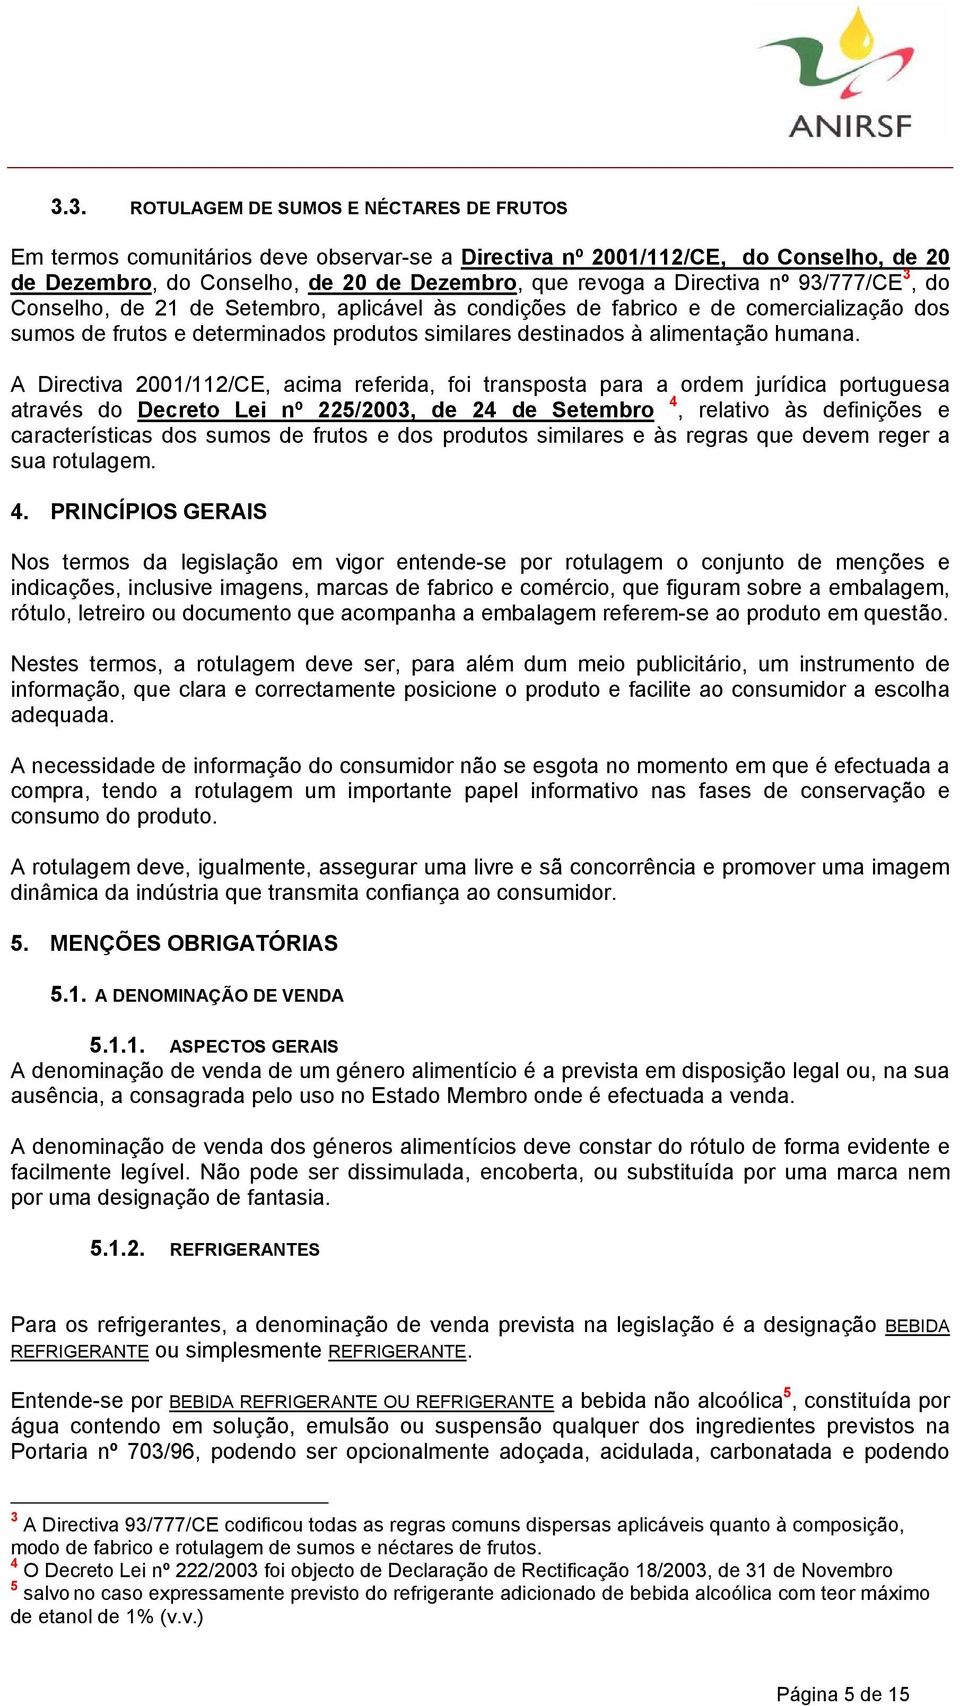 A Directiva 2001/112/CE, acima referida, foi transposta para a ordem jurídica portuguesa através do Decreto Lei nº 225/2003, de 24 de Setembro 4, relativo às definições e características dos sumos de